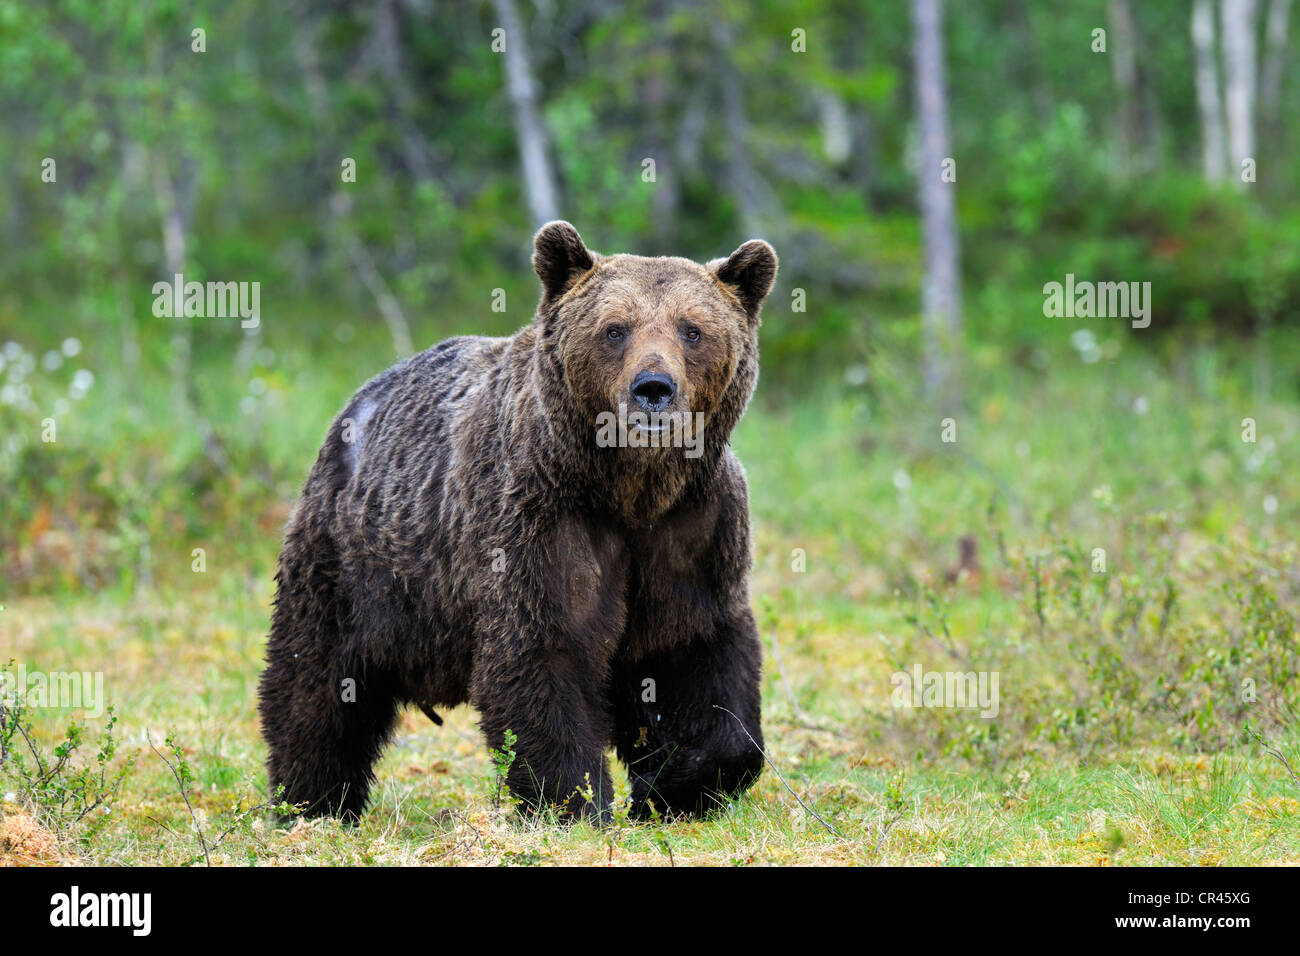 Ours brun (Ursus arctos), adulte mâle dans un marais, Martinselkonen, Carélie, dans l'est de la Finlande, Finlande, Europe Banque D'Images